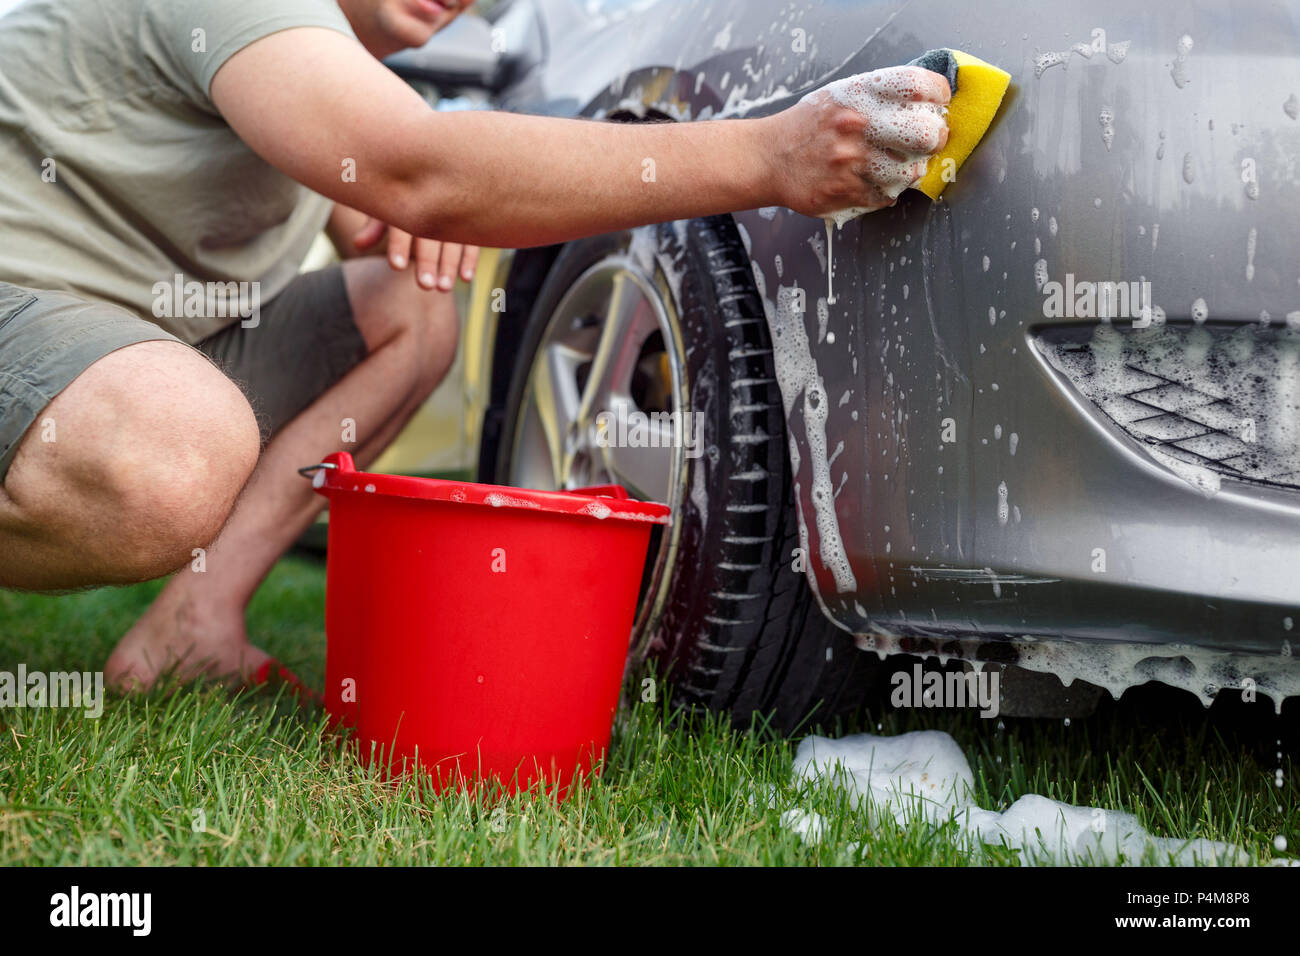 Schwamm und Eimer - Junger Mann sein Auto waschen Stockfotografie - Alamy